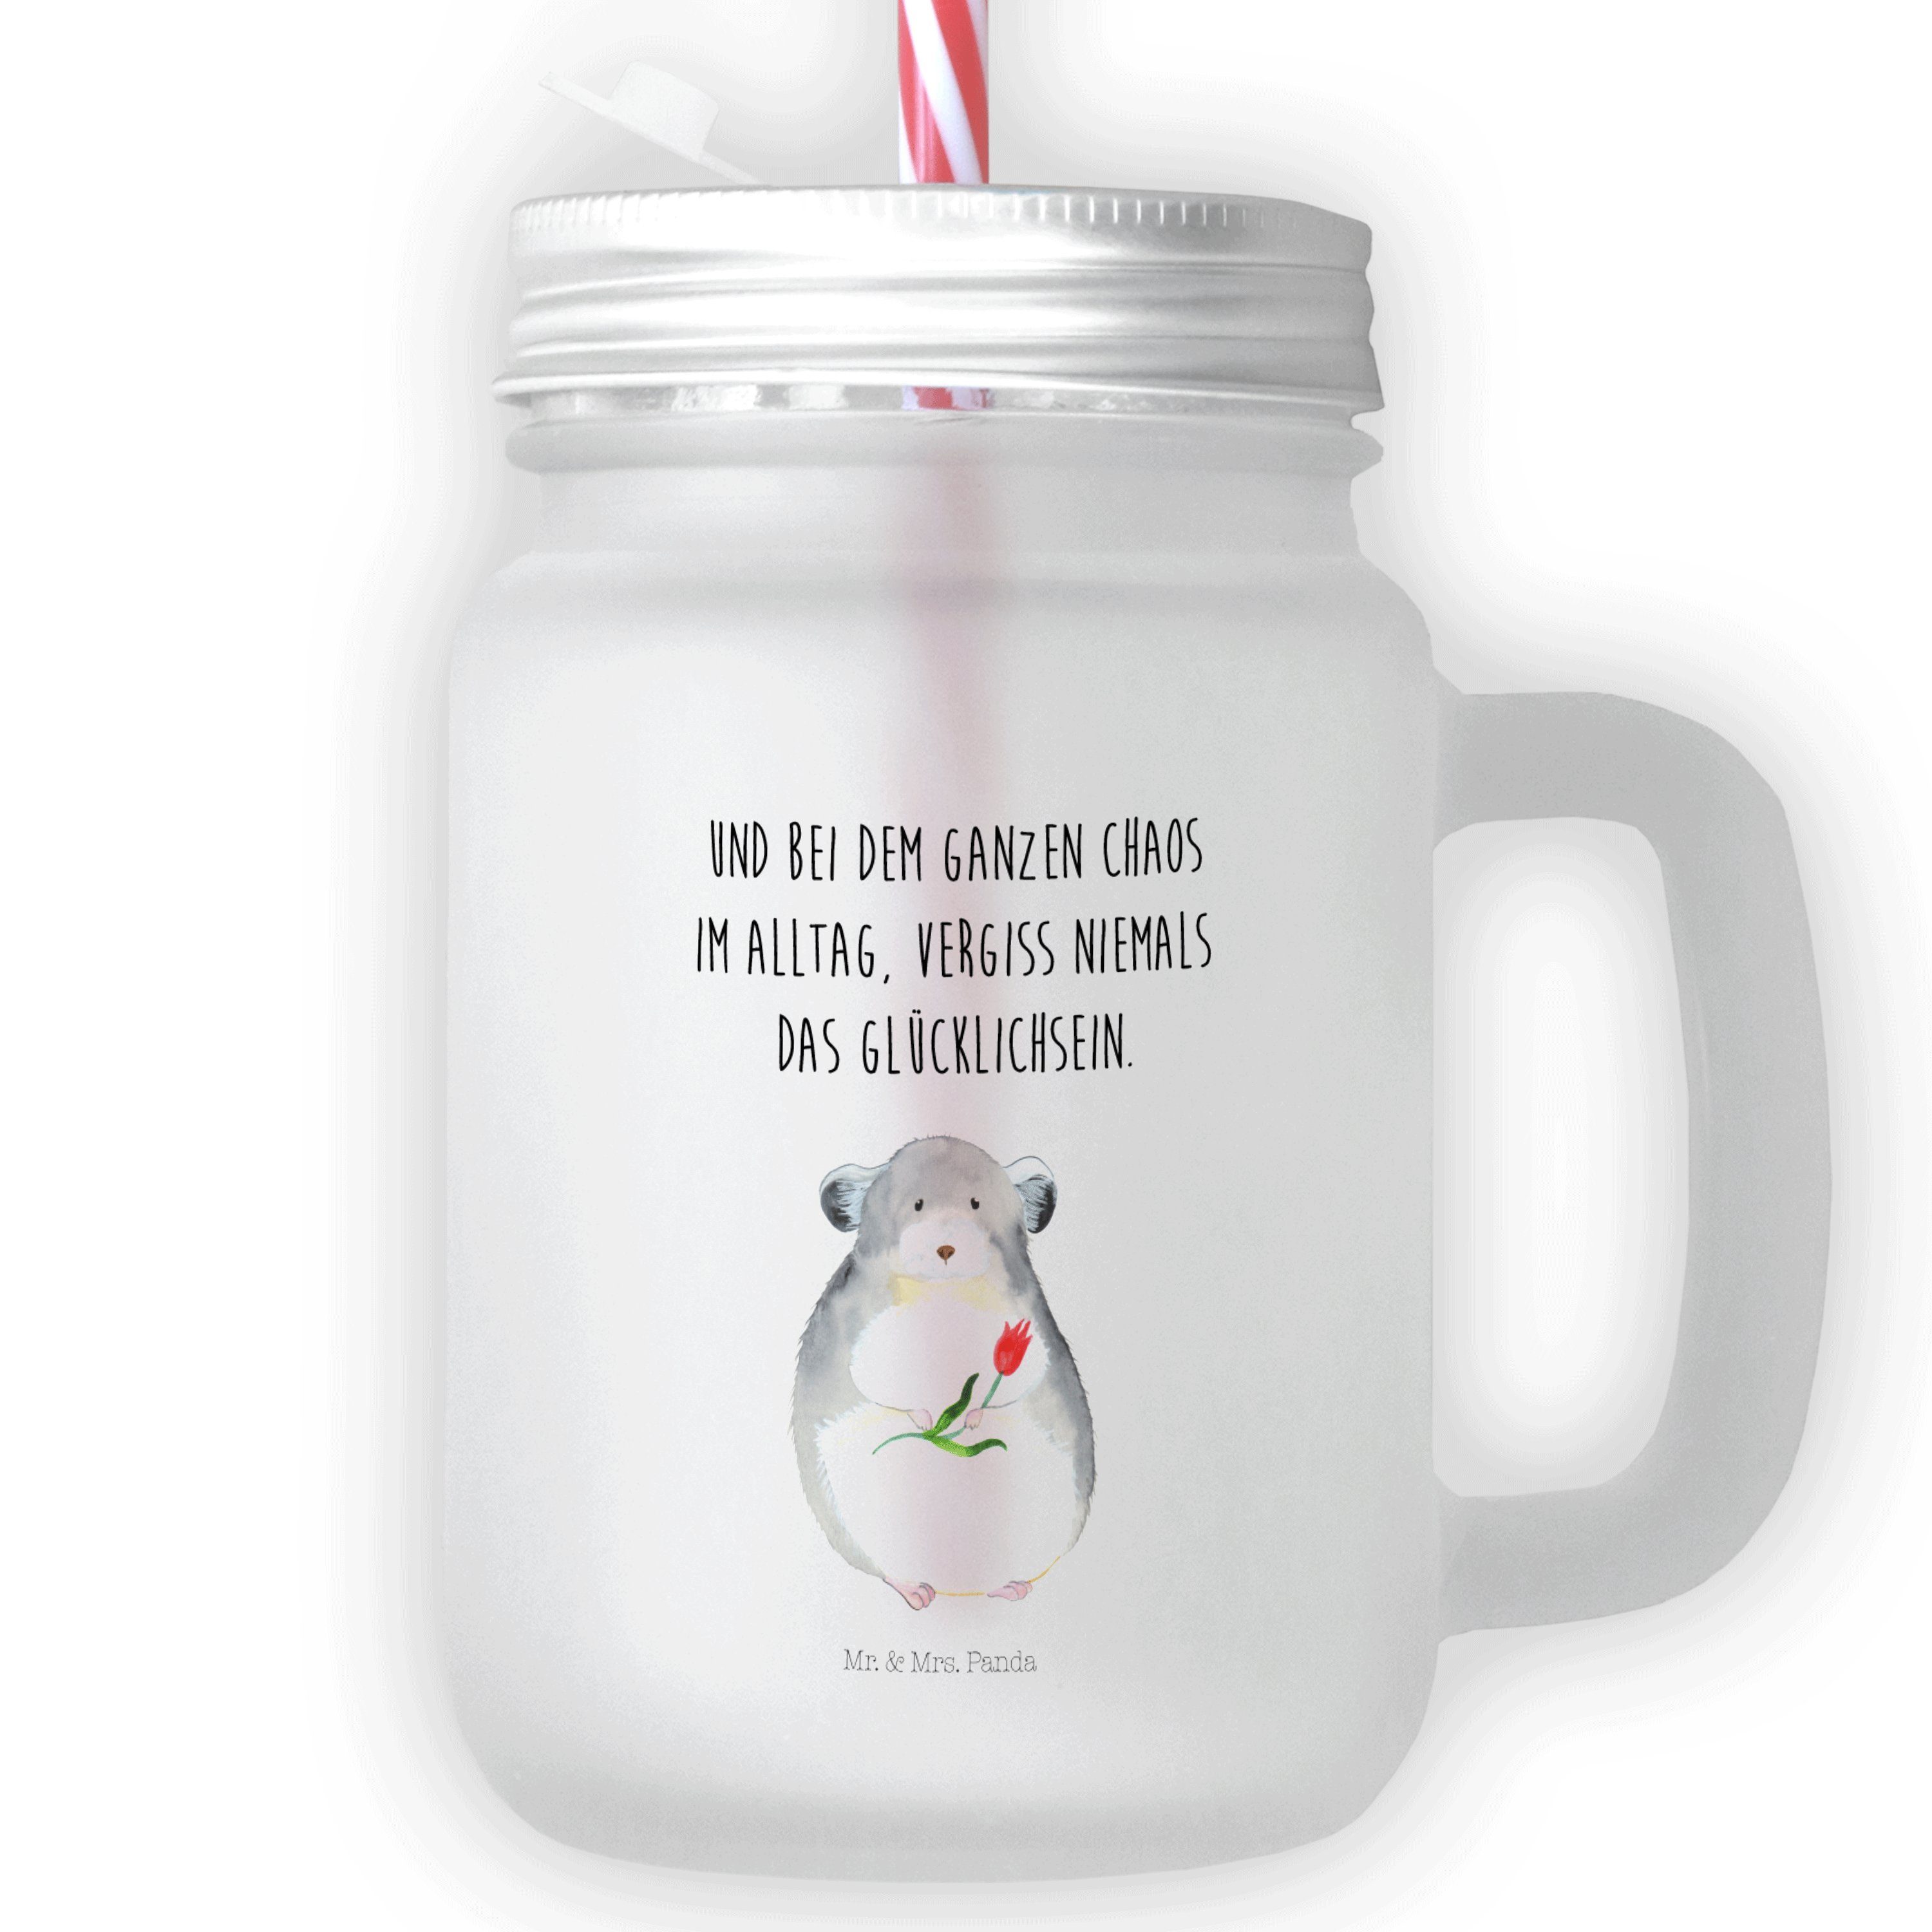 Laune, - mit Premium Gute & Chinchilla Panda Transparent Mason Jar, Geschenk, - Glas Glas Blume Mr. Mrs.